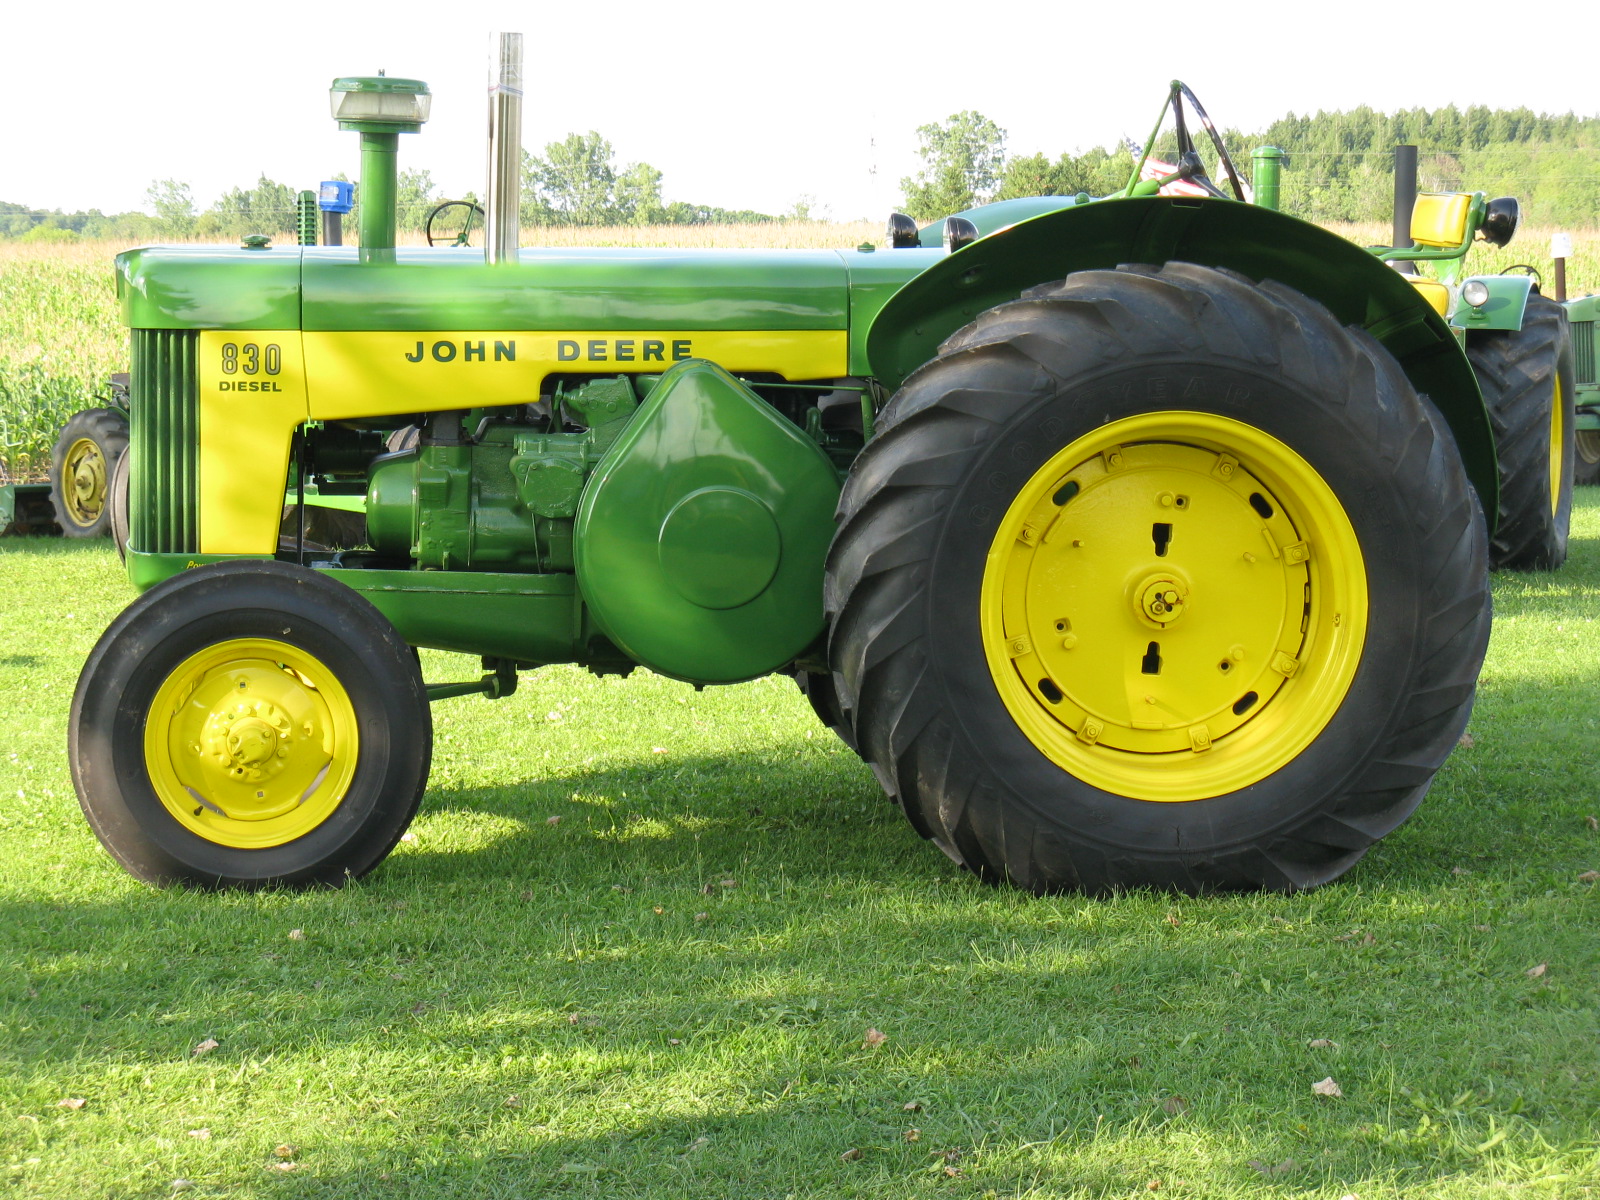 File:John Deere 830 Diesel tractor.jpg